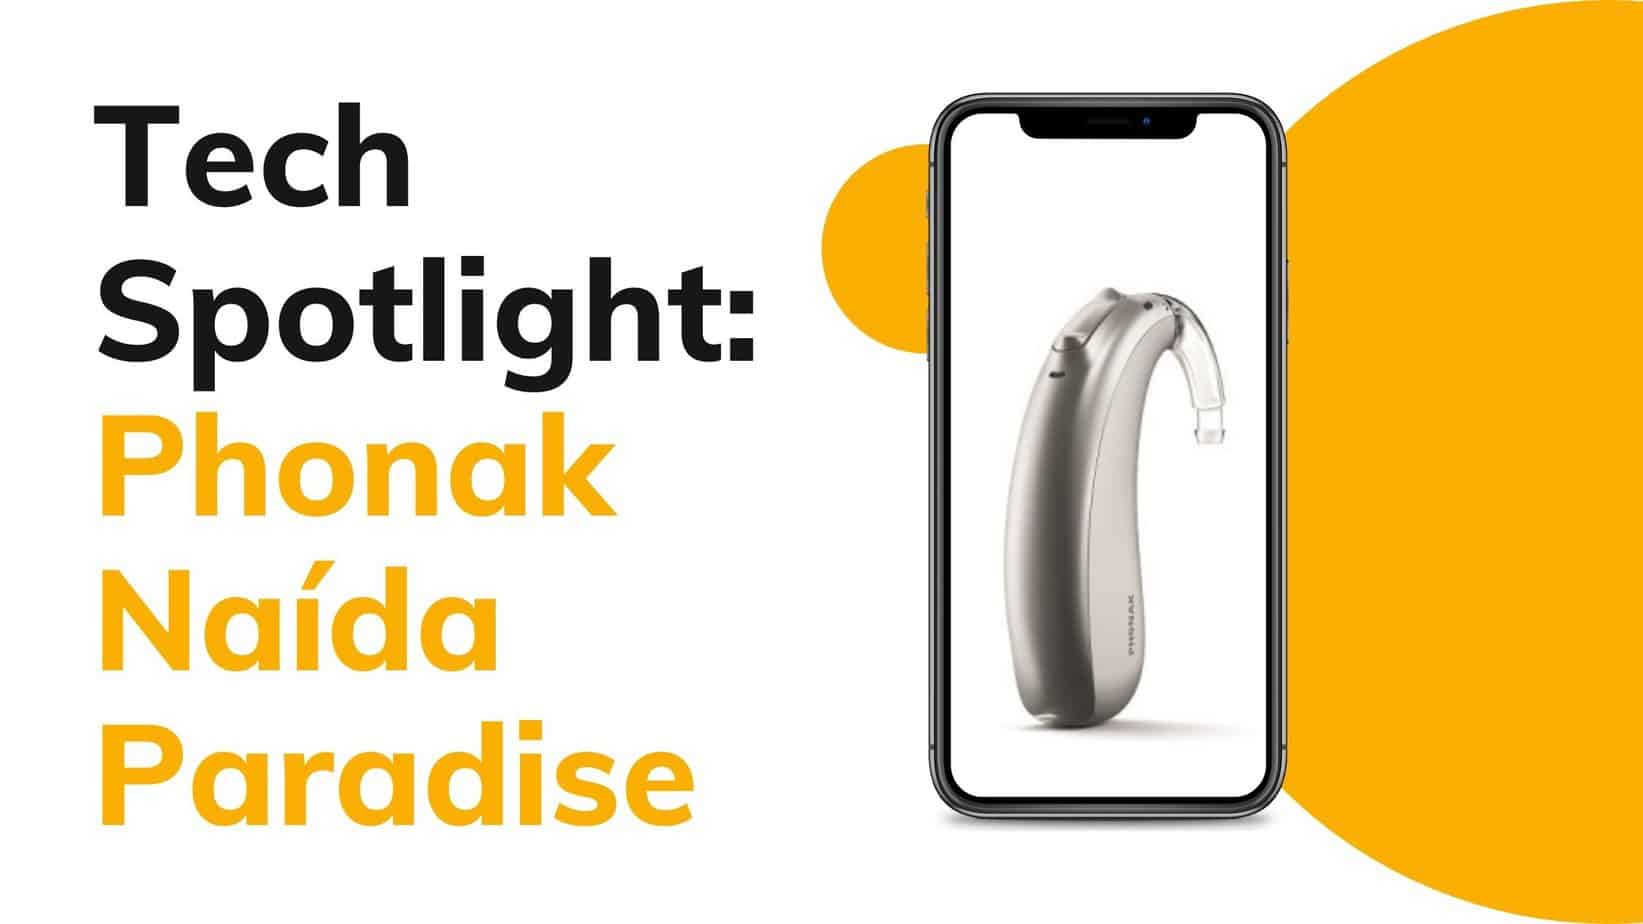 Tech Spotlight: Phonak Naída Paradise